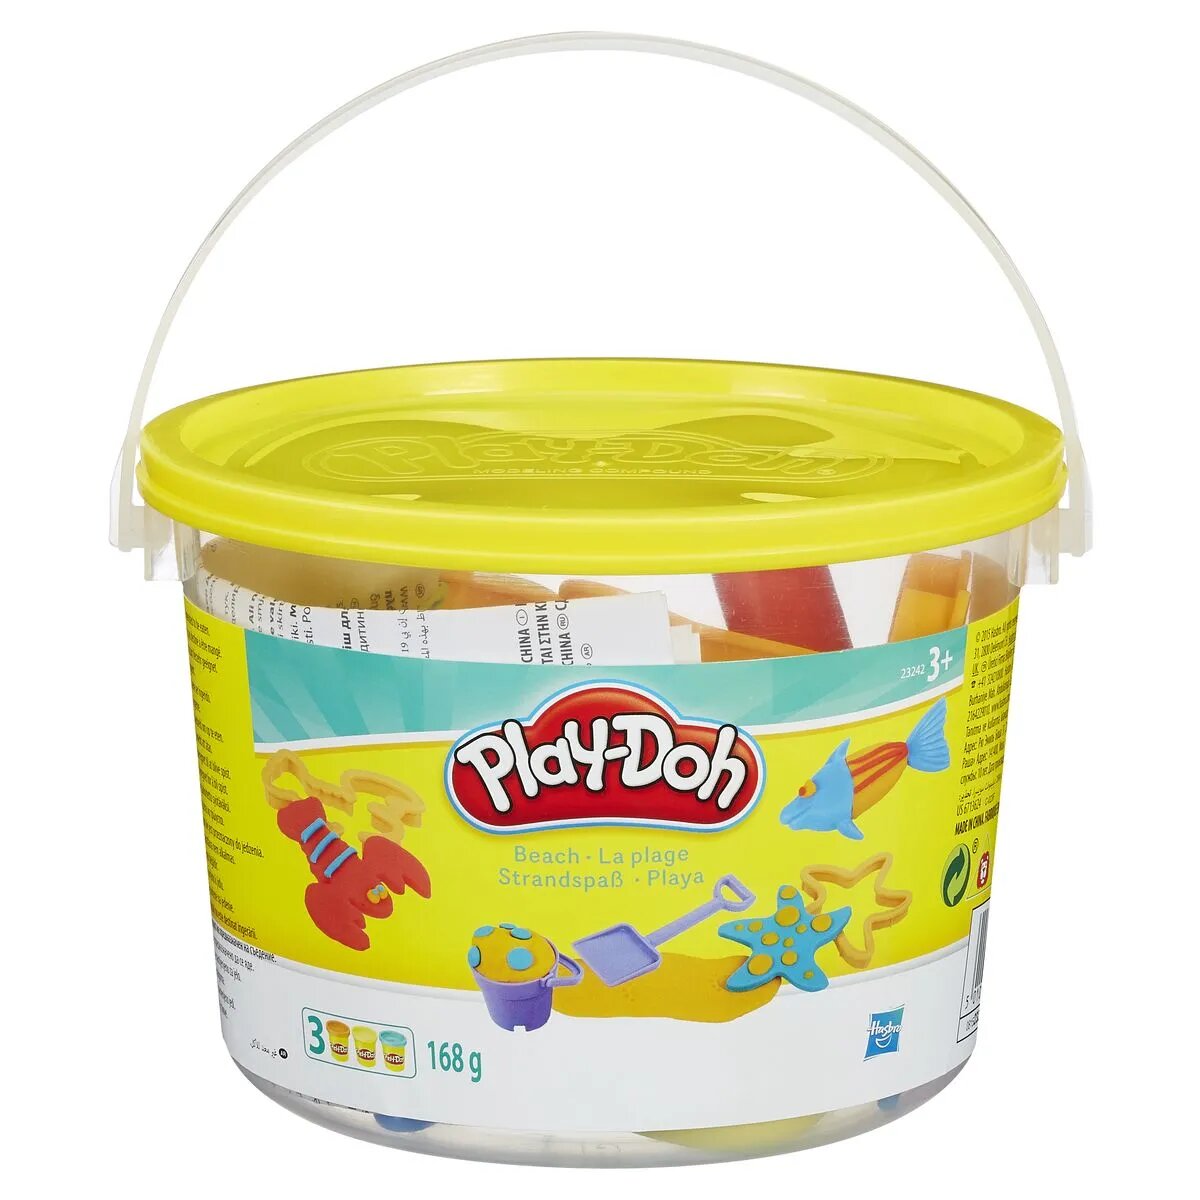 Play-Doh Spaßeimer, 1 Stück, 4-fach sortiert